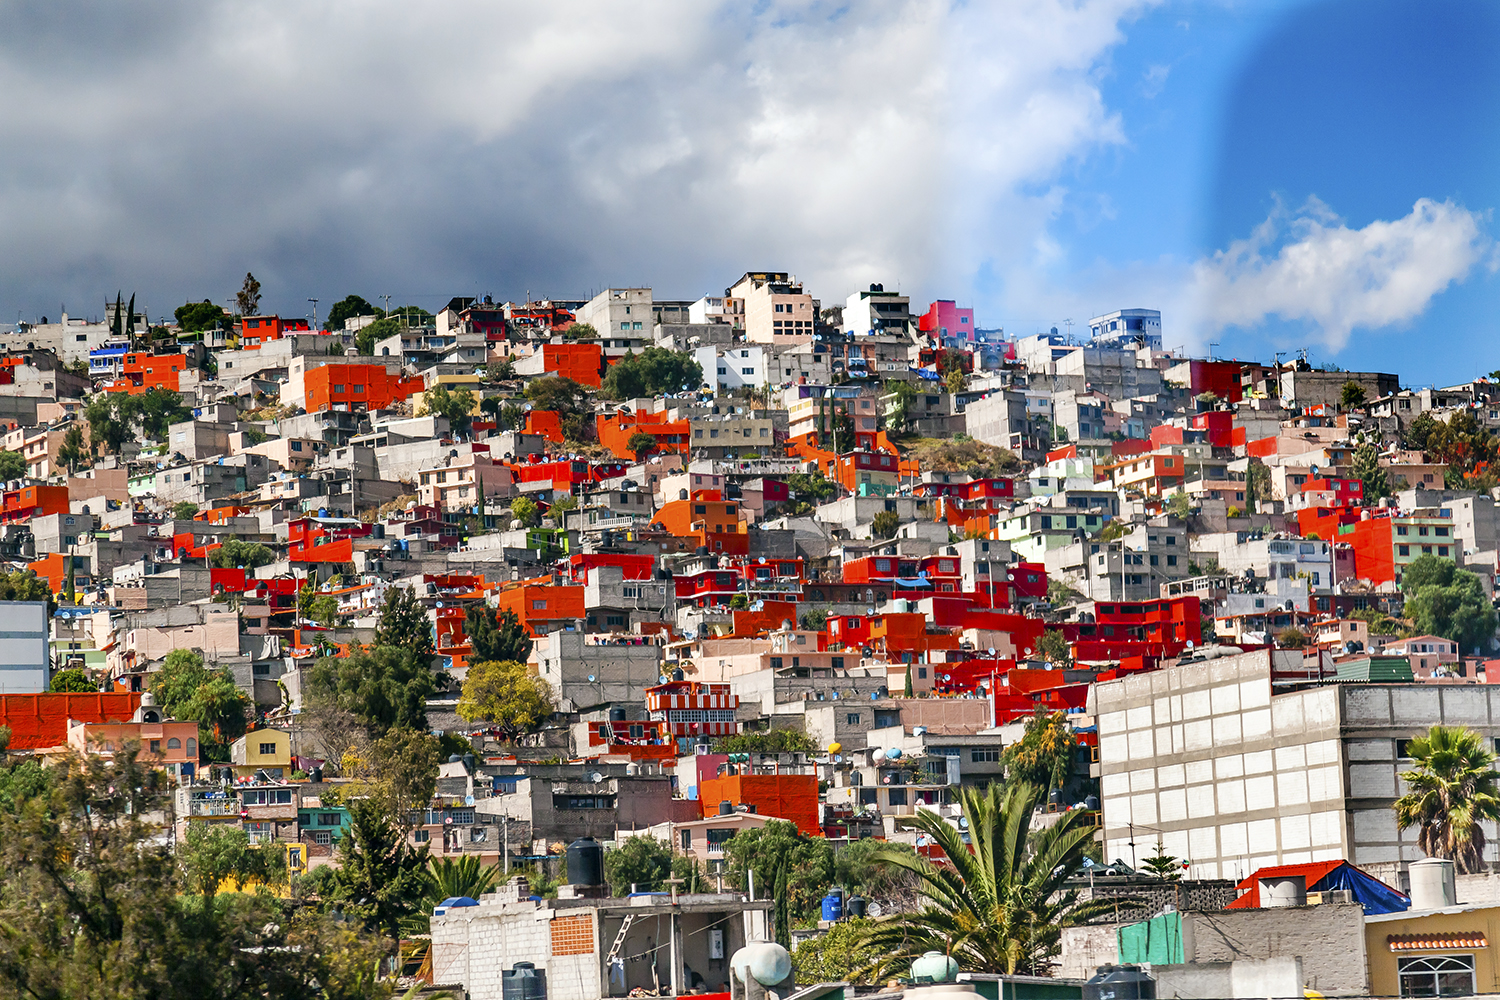 la seguridad en la distribución es complicada y difícil en algunos suburbios de México